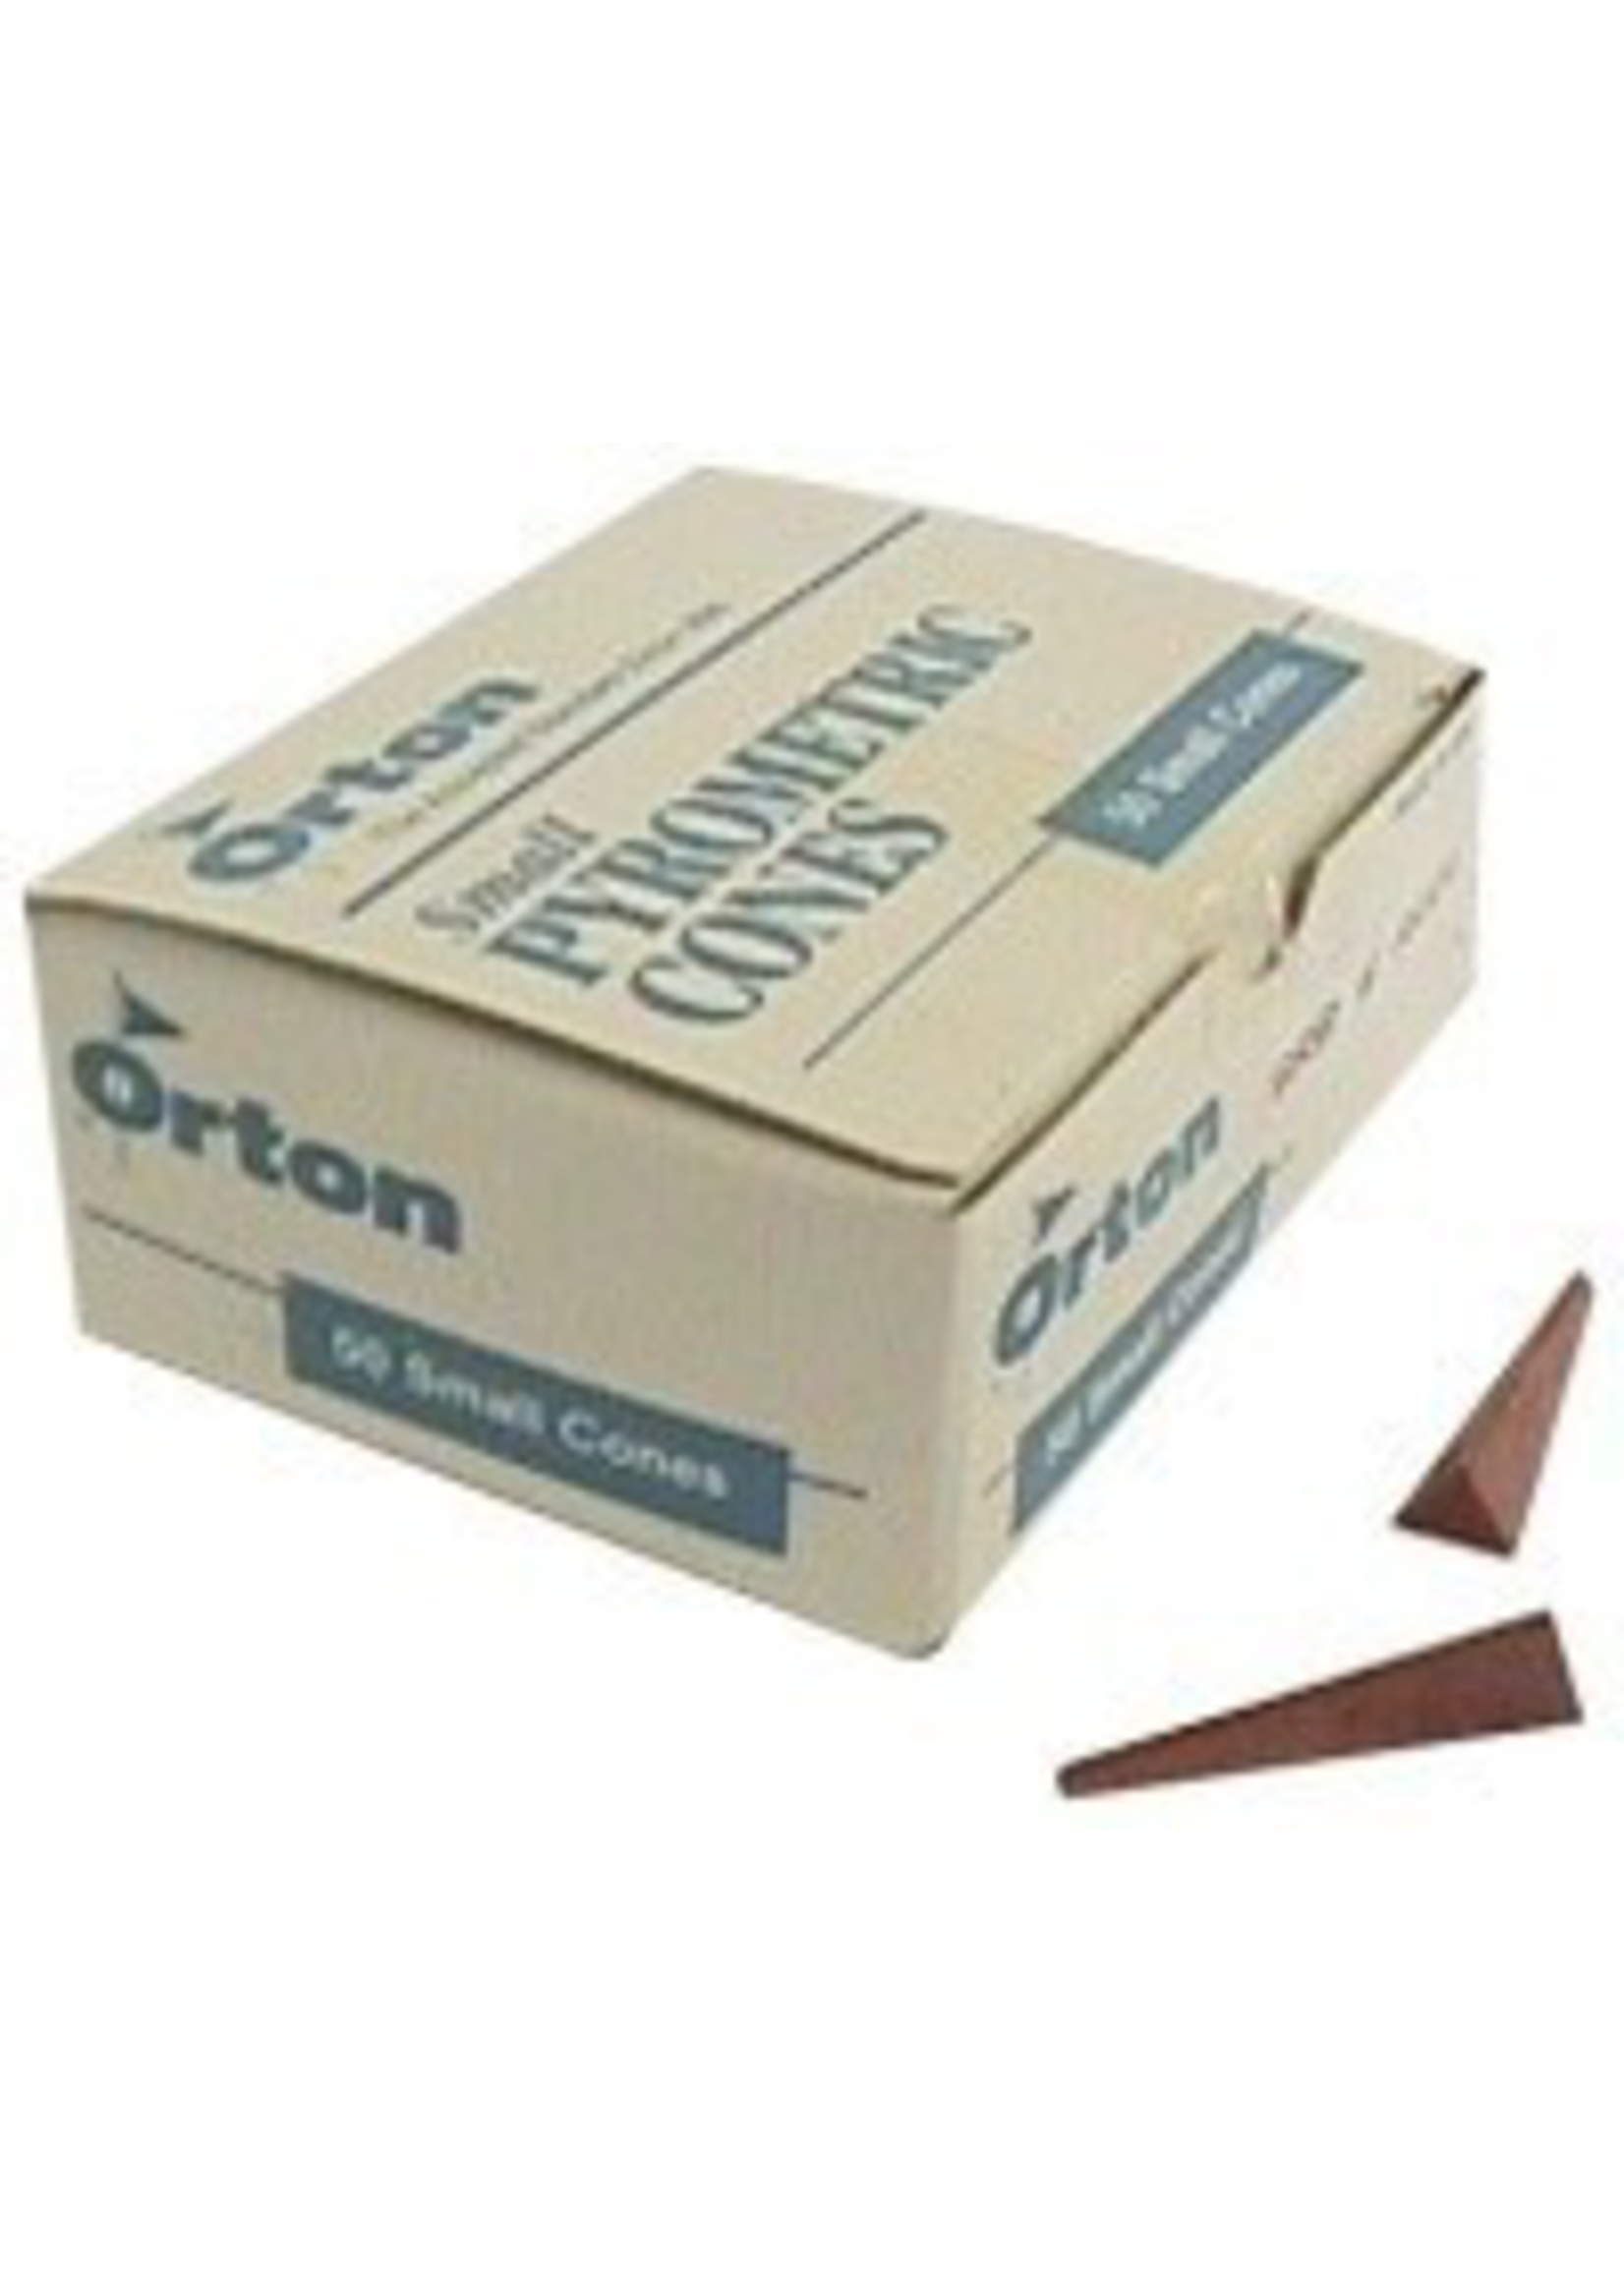 Orton small cone 8 (x10)